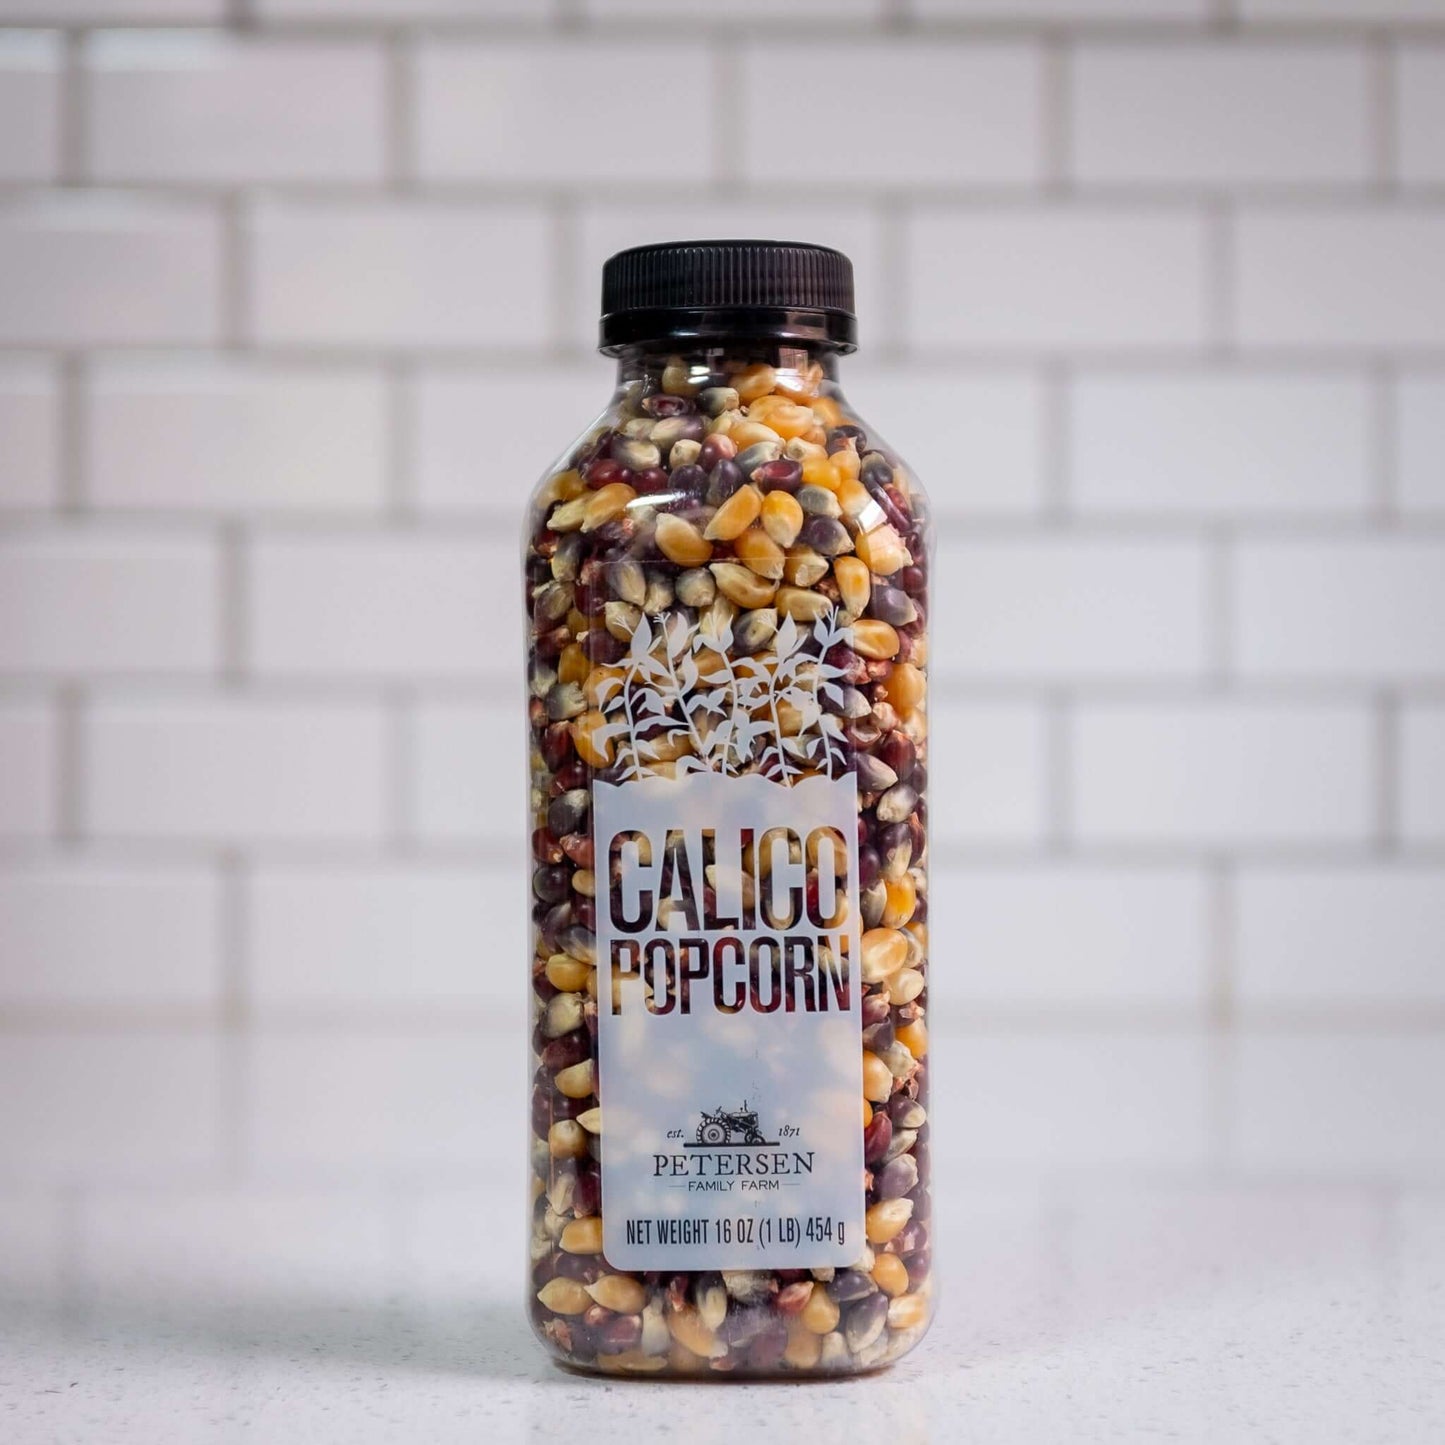 A bottle of calico popcorn kernels.